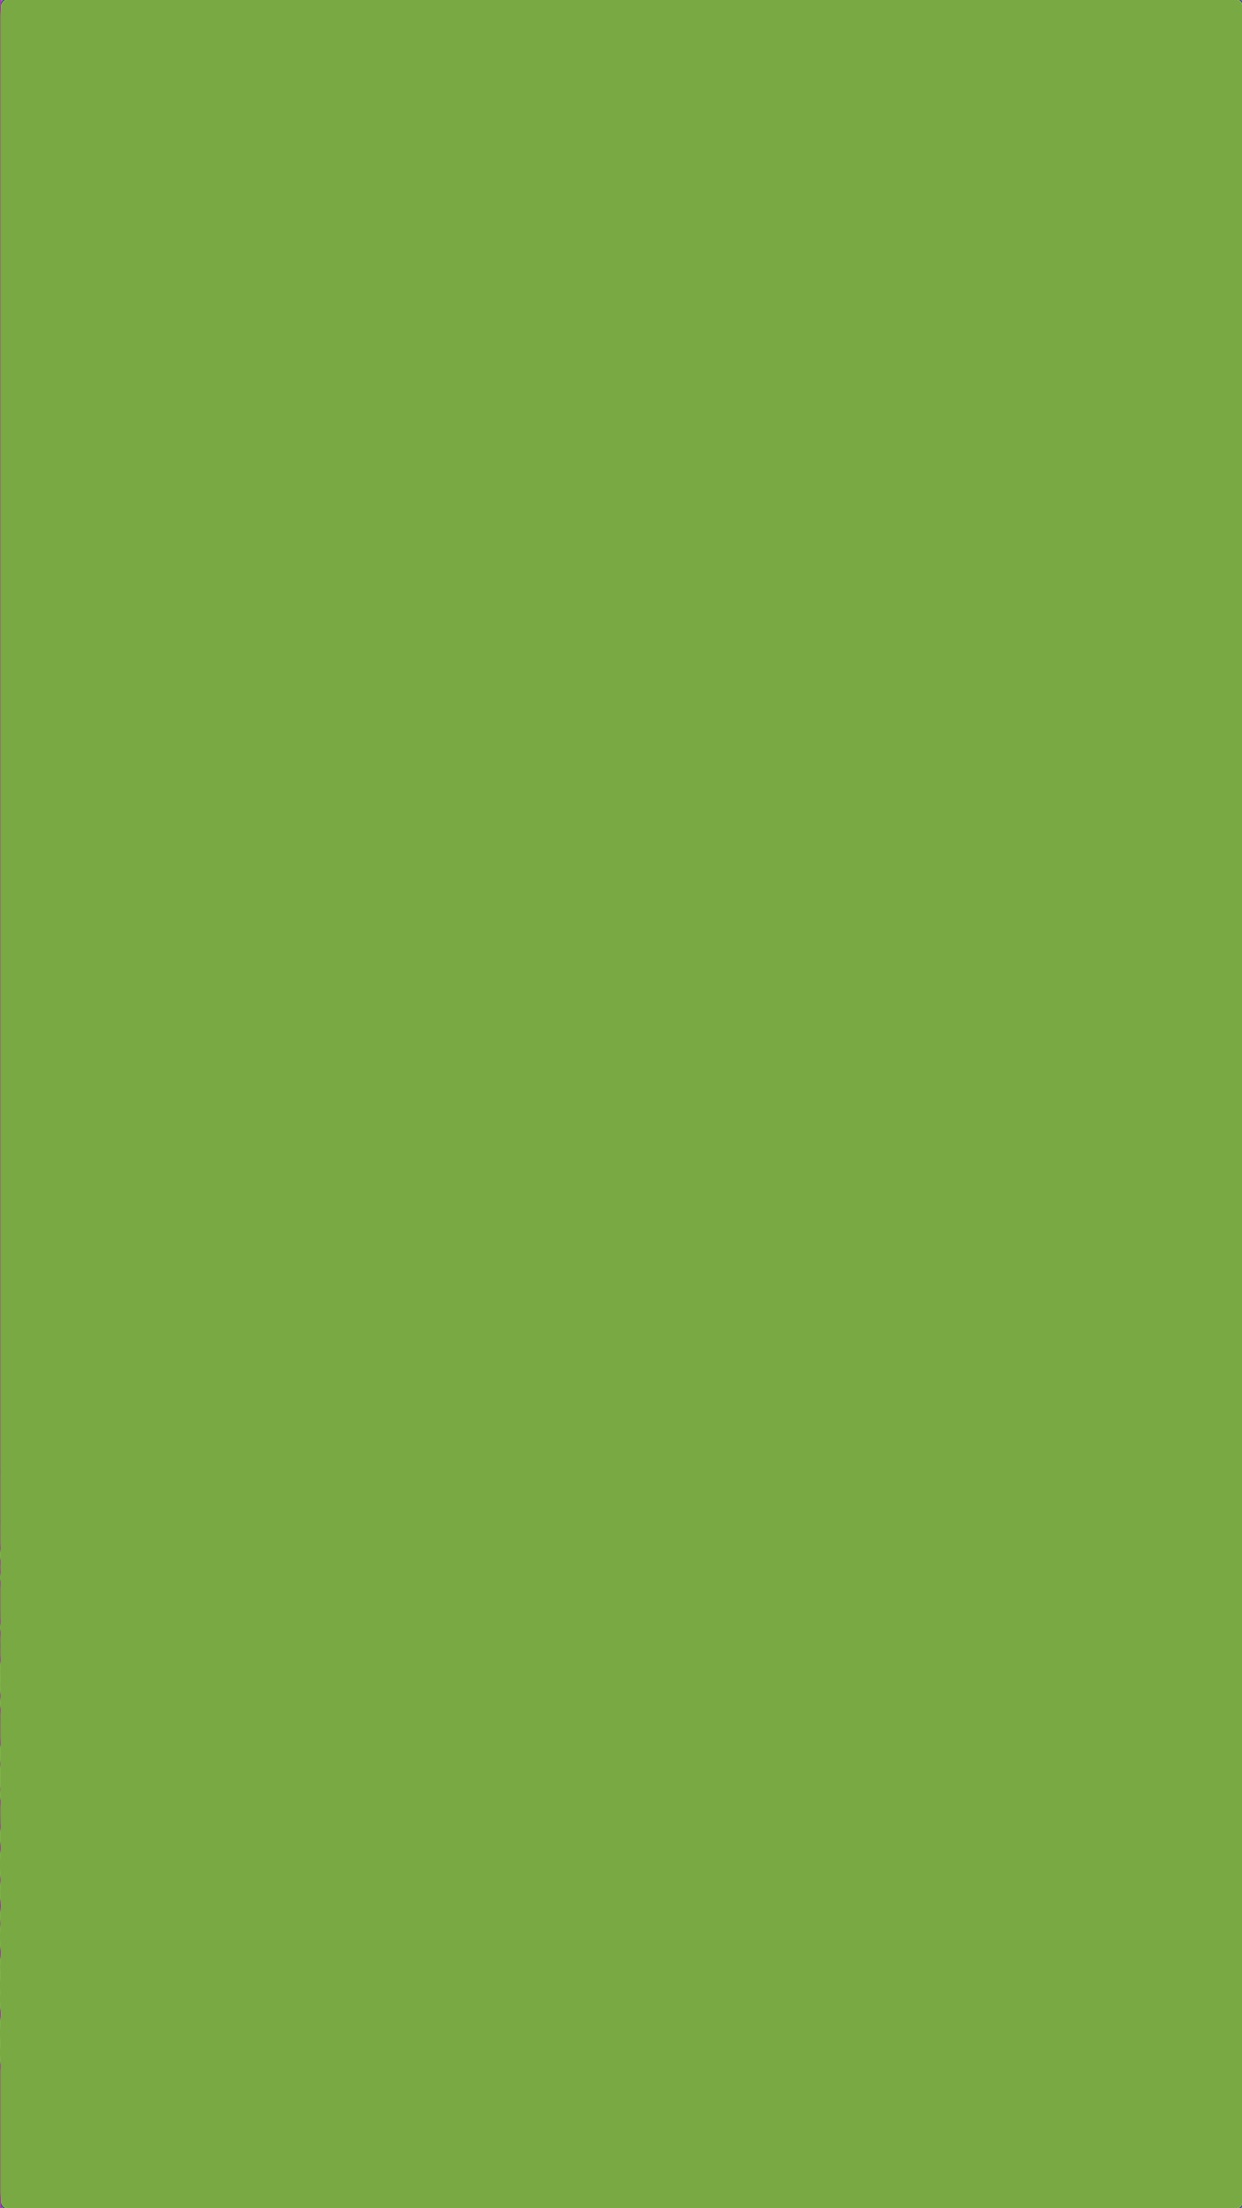 green colour wallpaper,green,yellow,grass,leaf,font